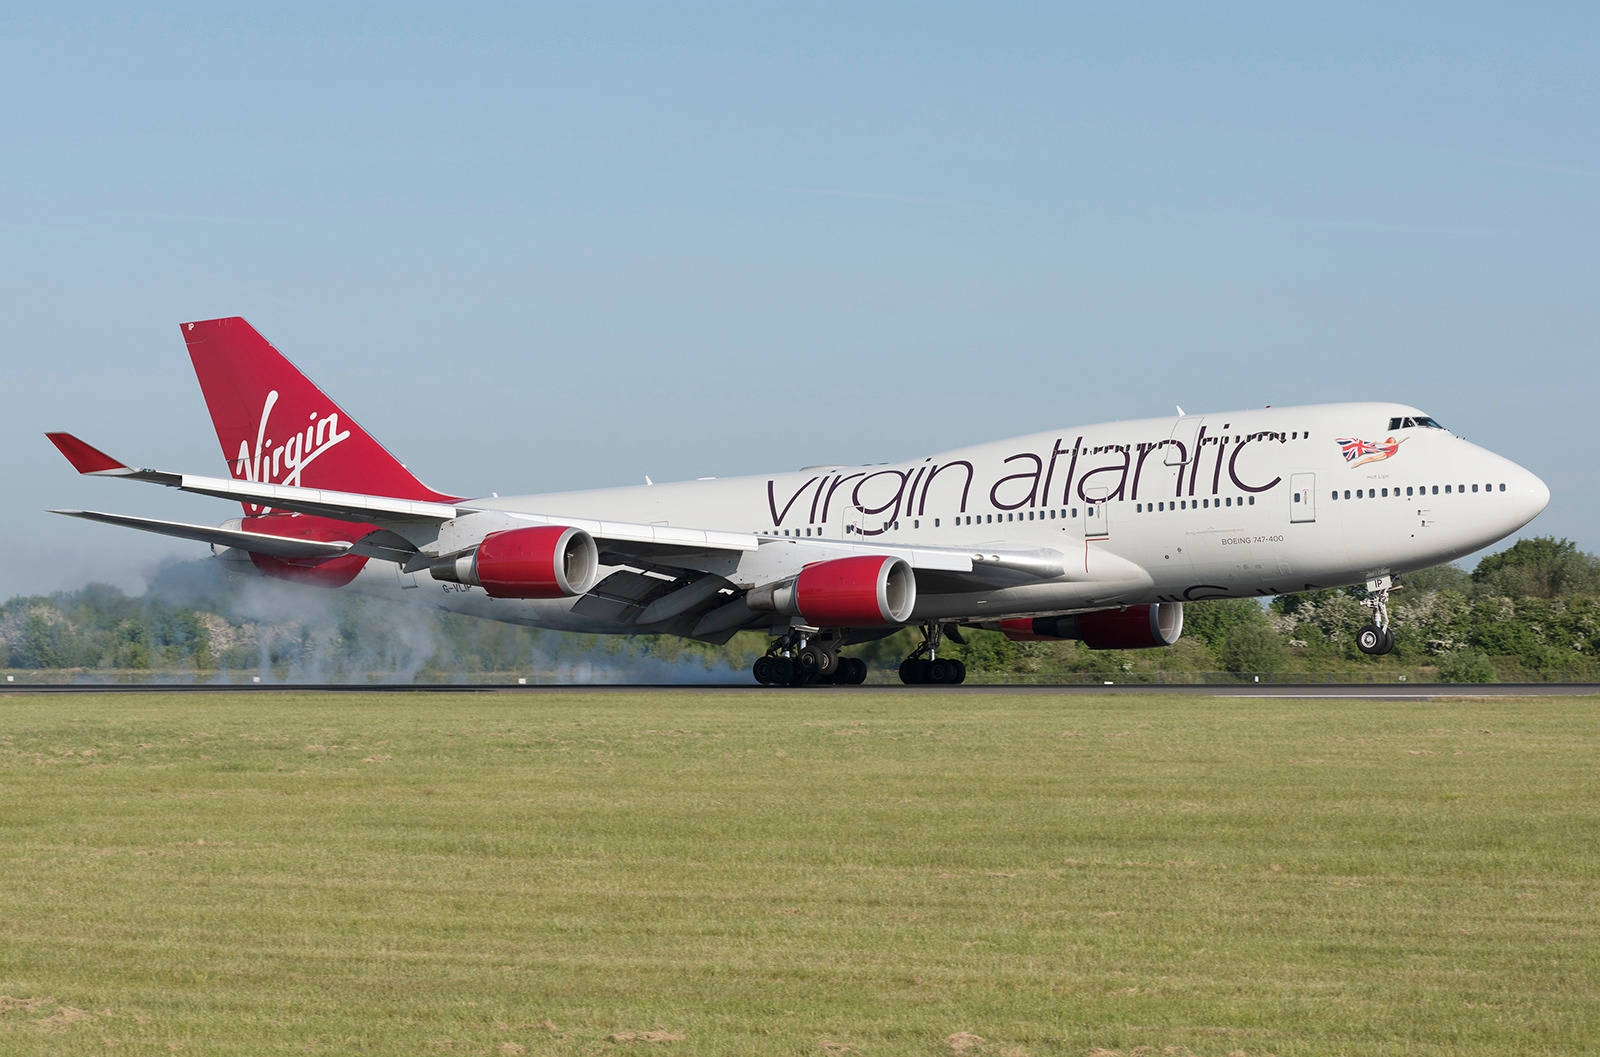 Abflugvon Virgin Atlantic-luftfahrt. Wallpaper